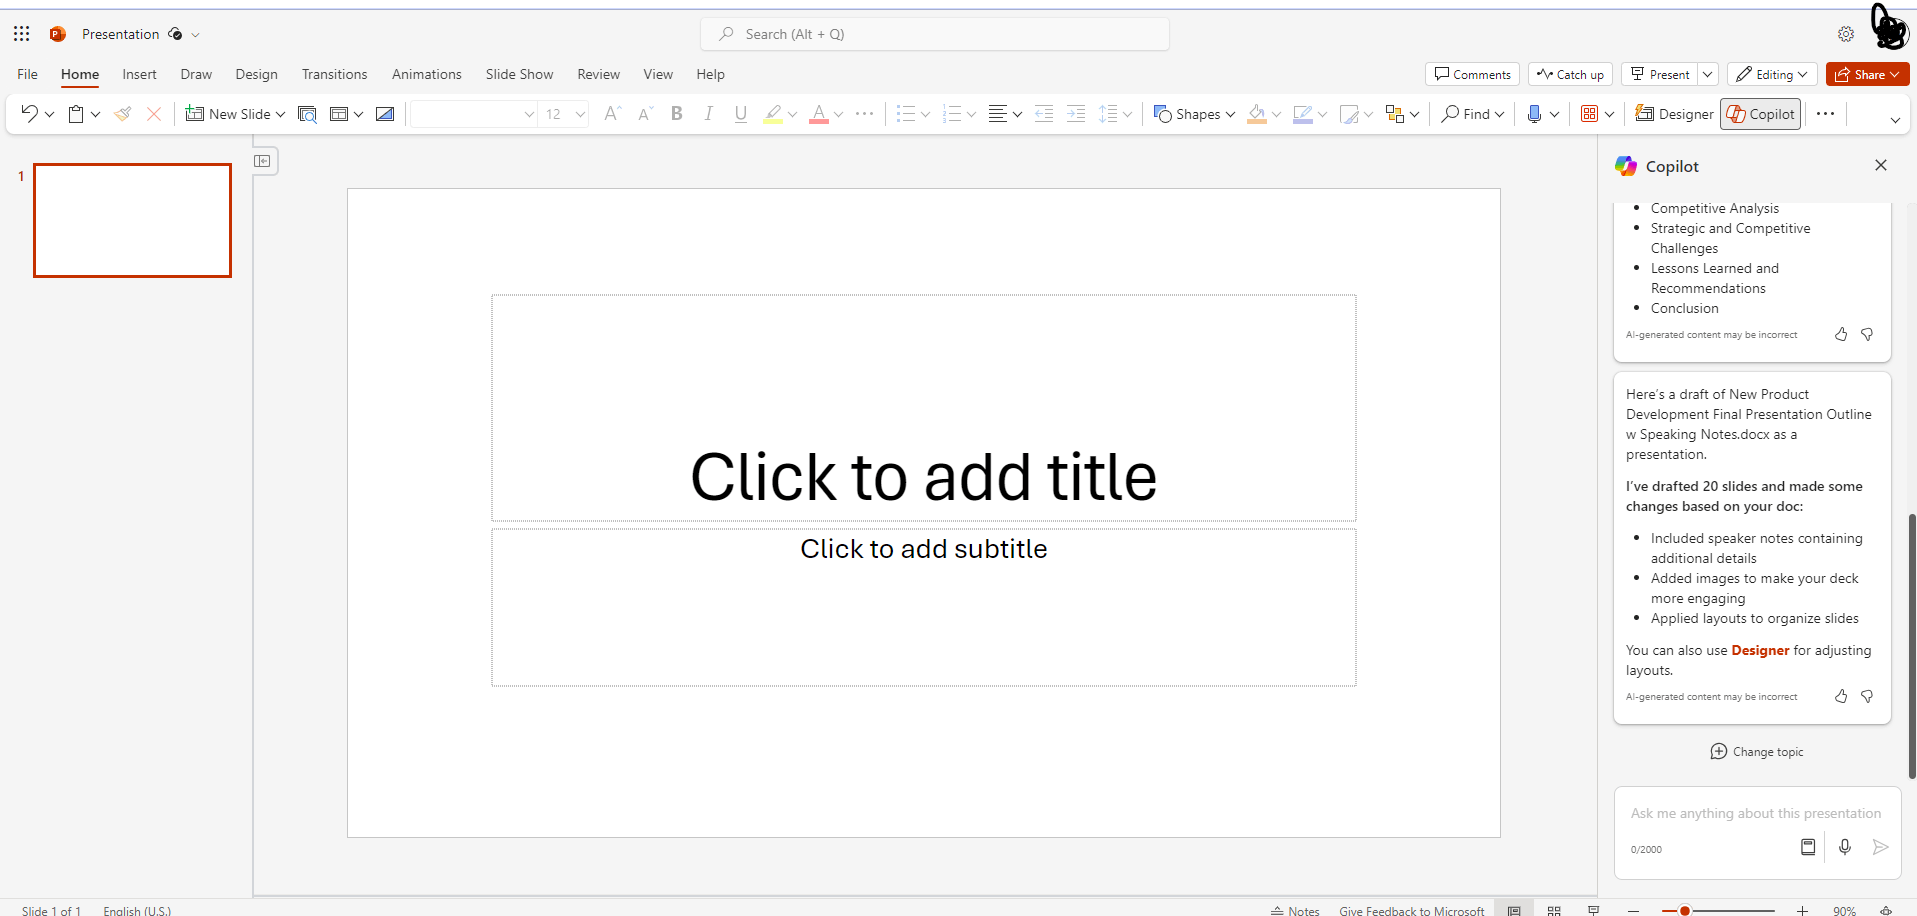 20 slide powerpoint presentation